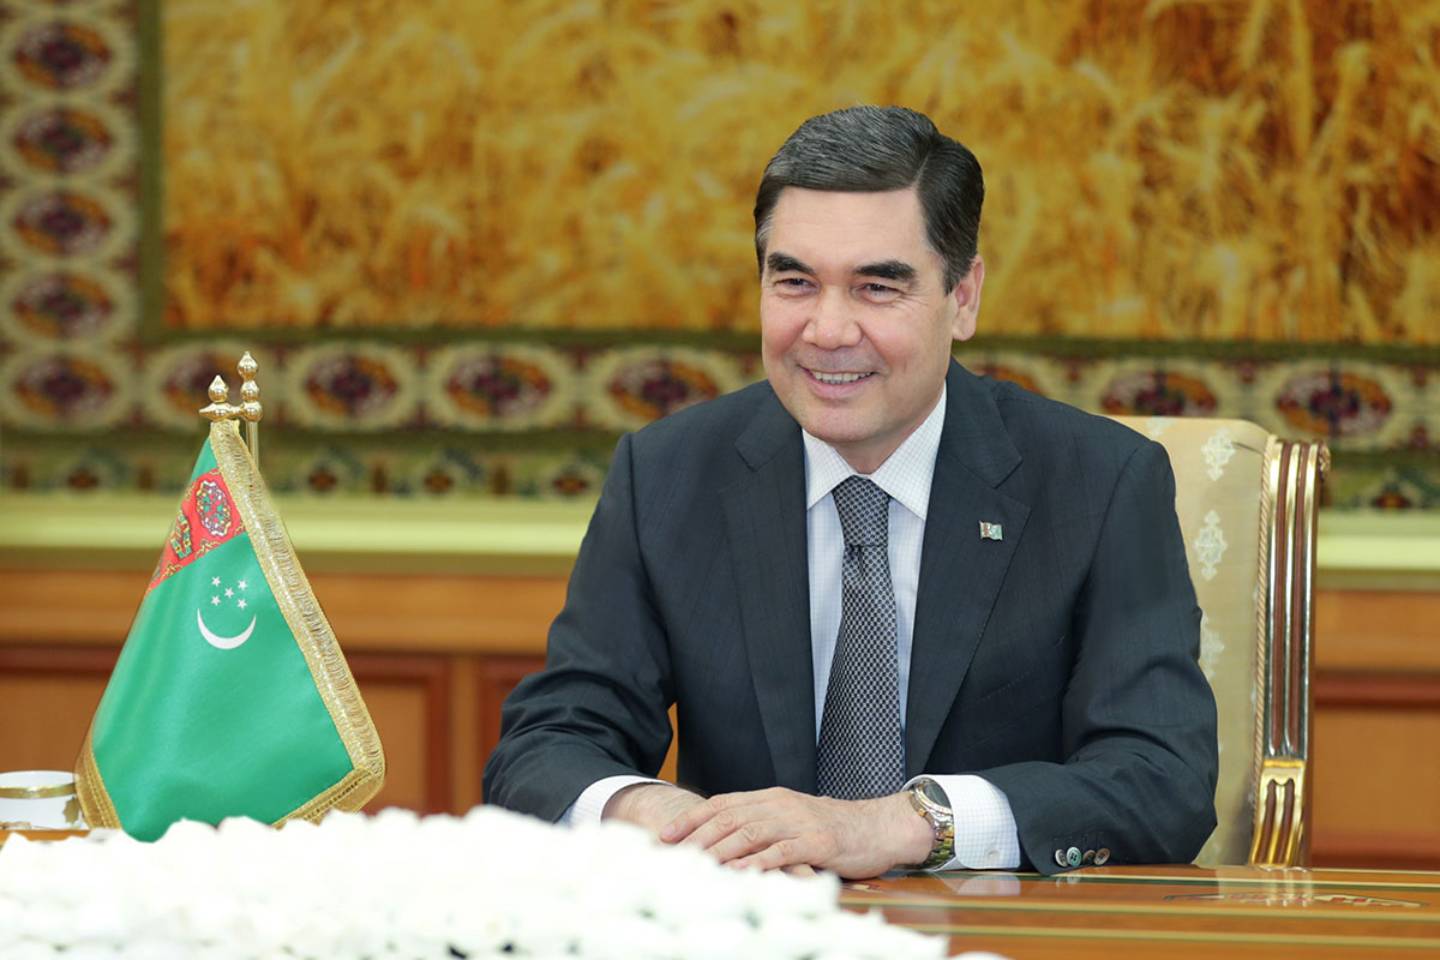 Новости мира / Политика в мире / Глава Туркменистана заявил о намерении передать свой пост молодому руководителю